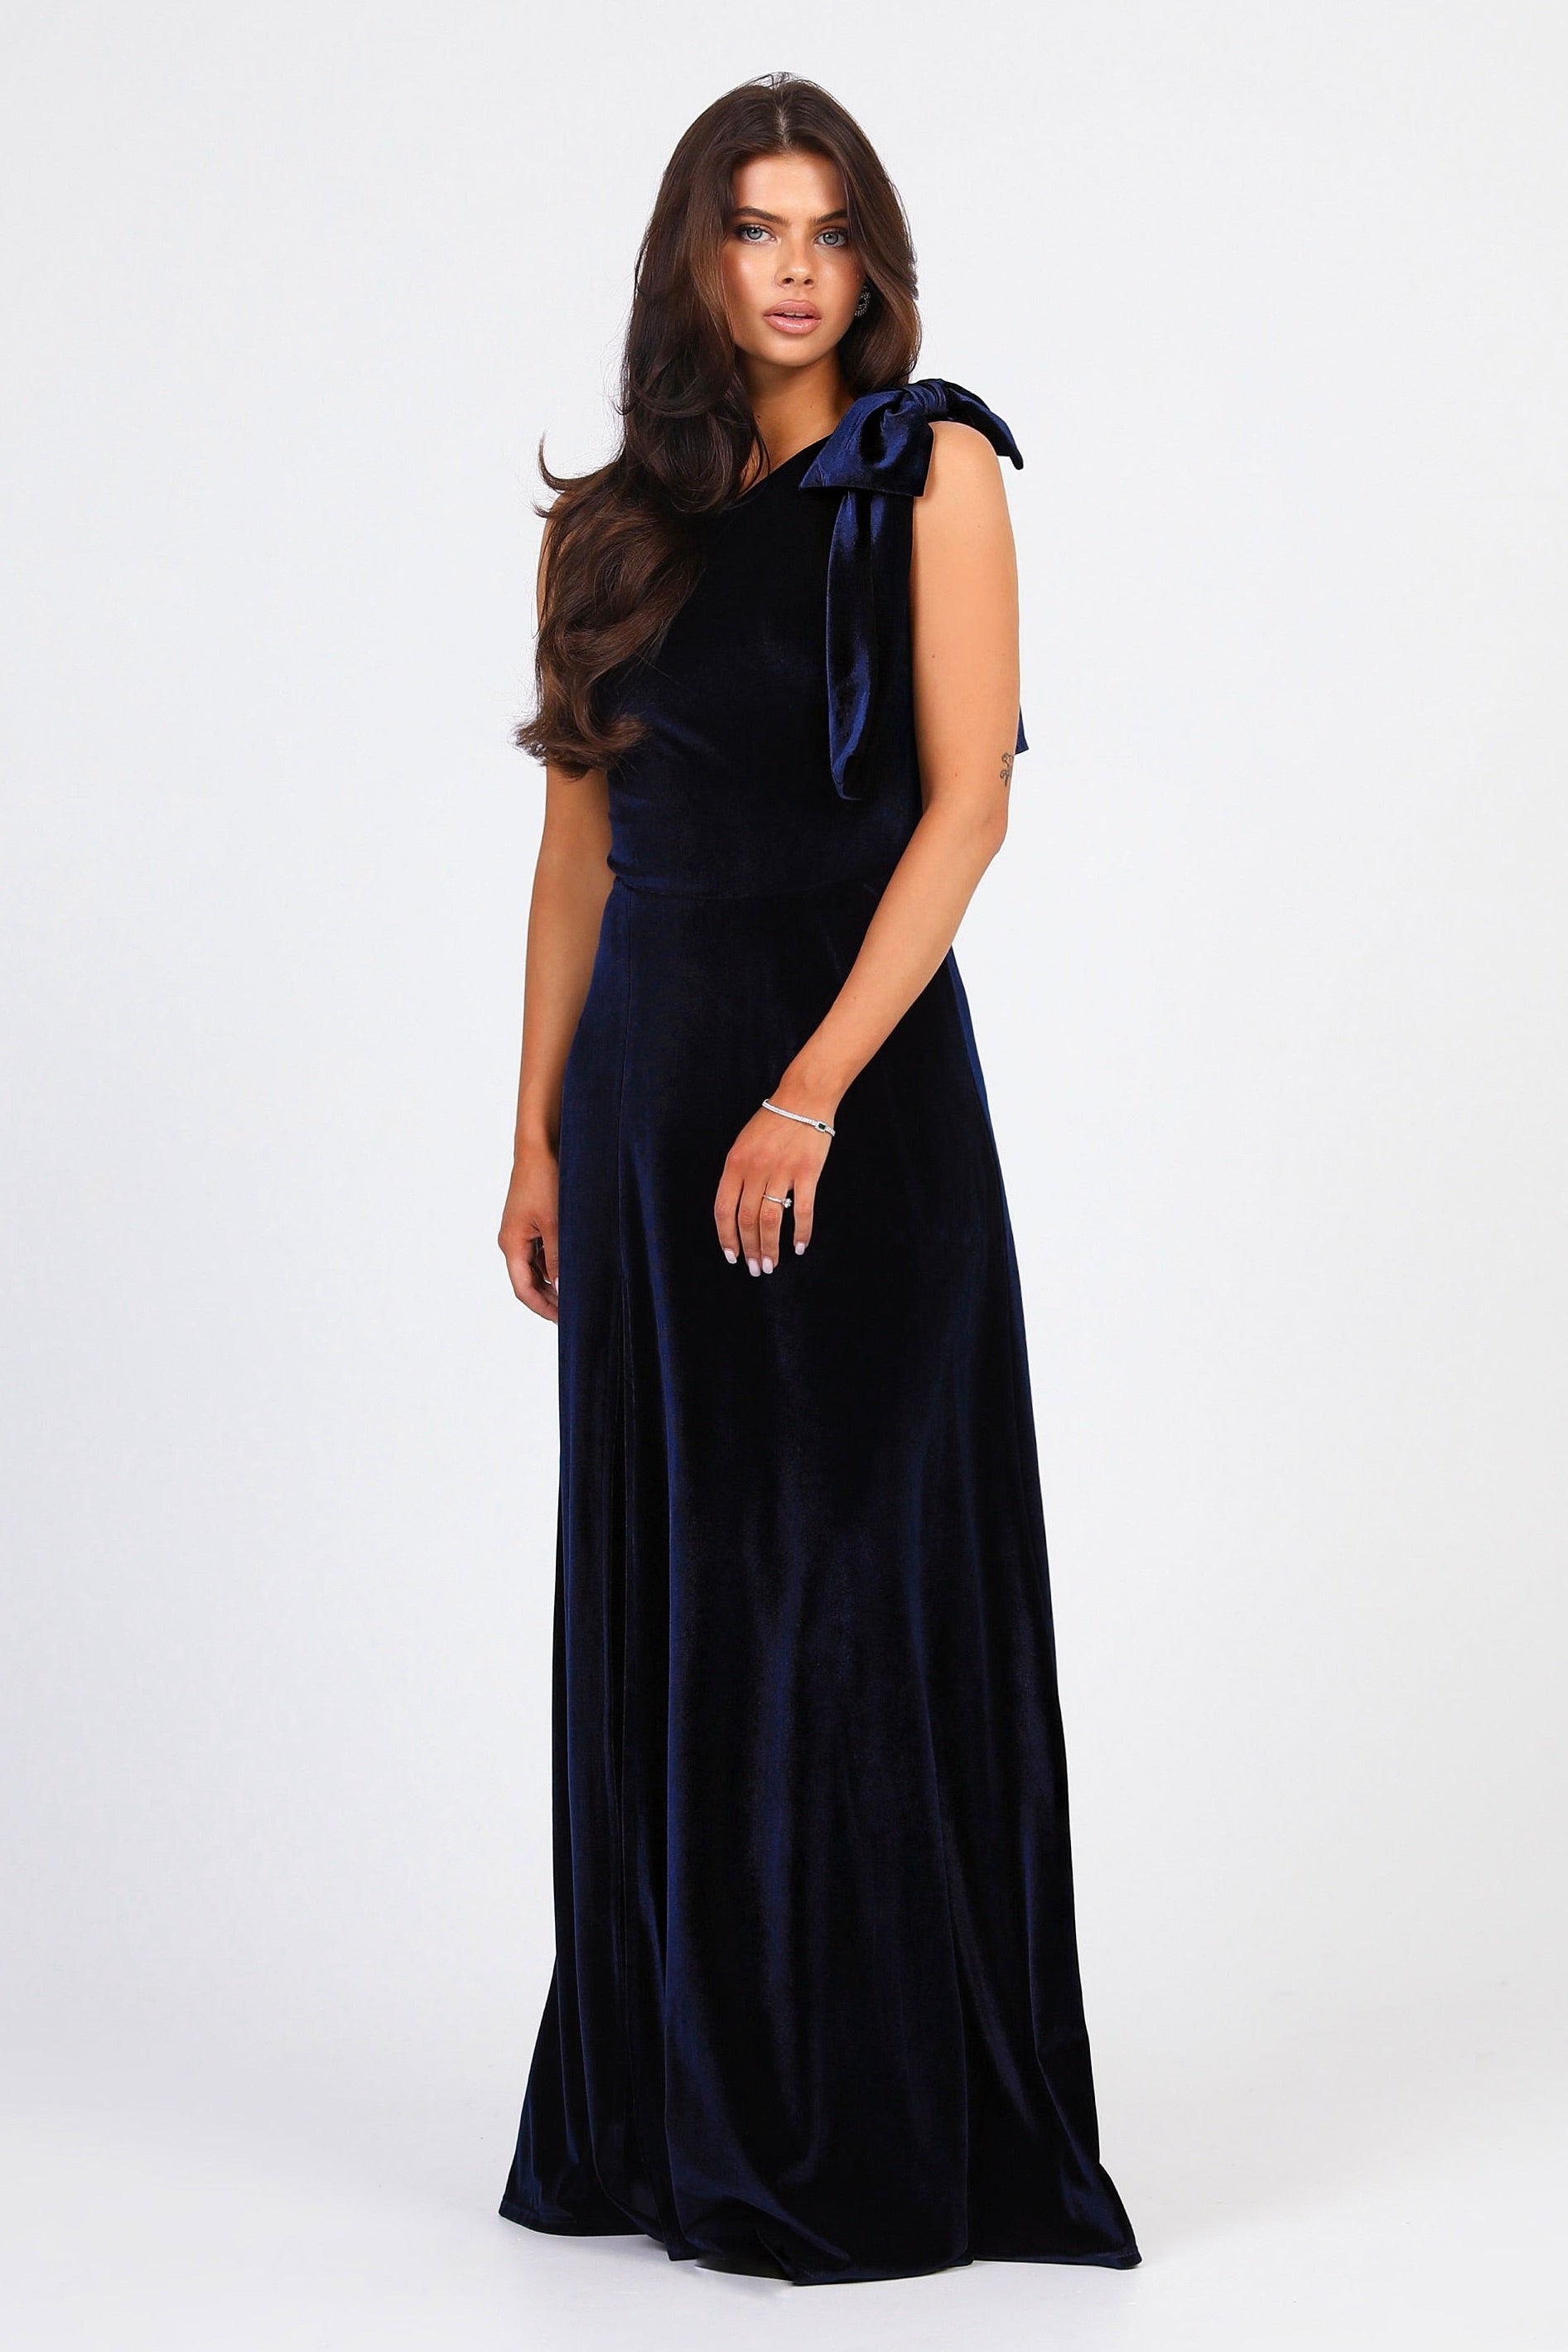 Velvet Gown Dress | Stylish Party Wear Velvet Gown Designs | LFD - YouTube